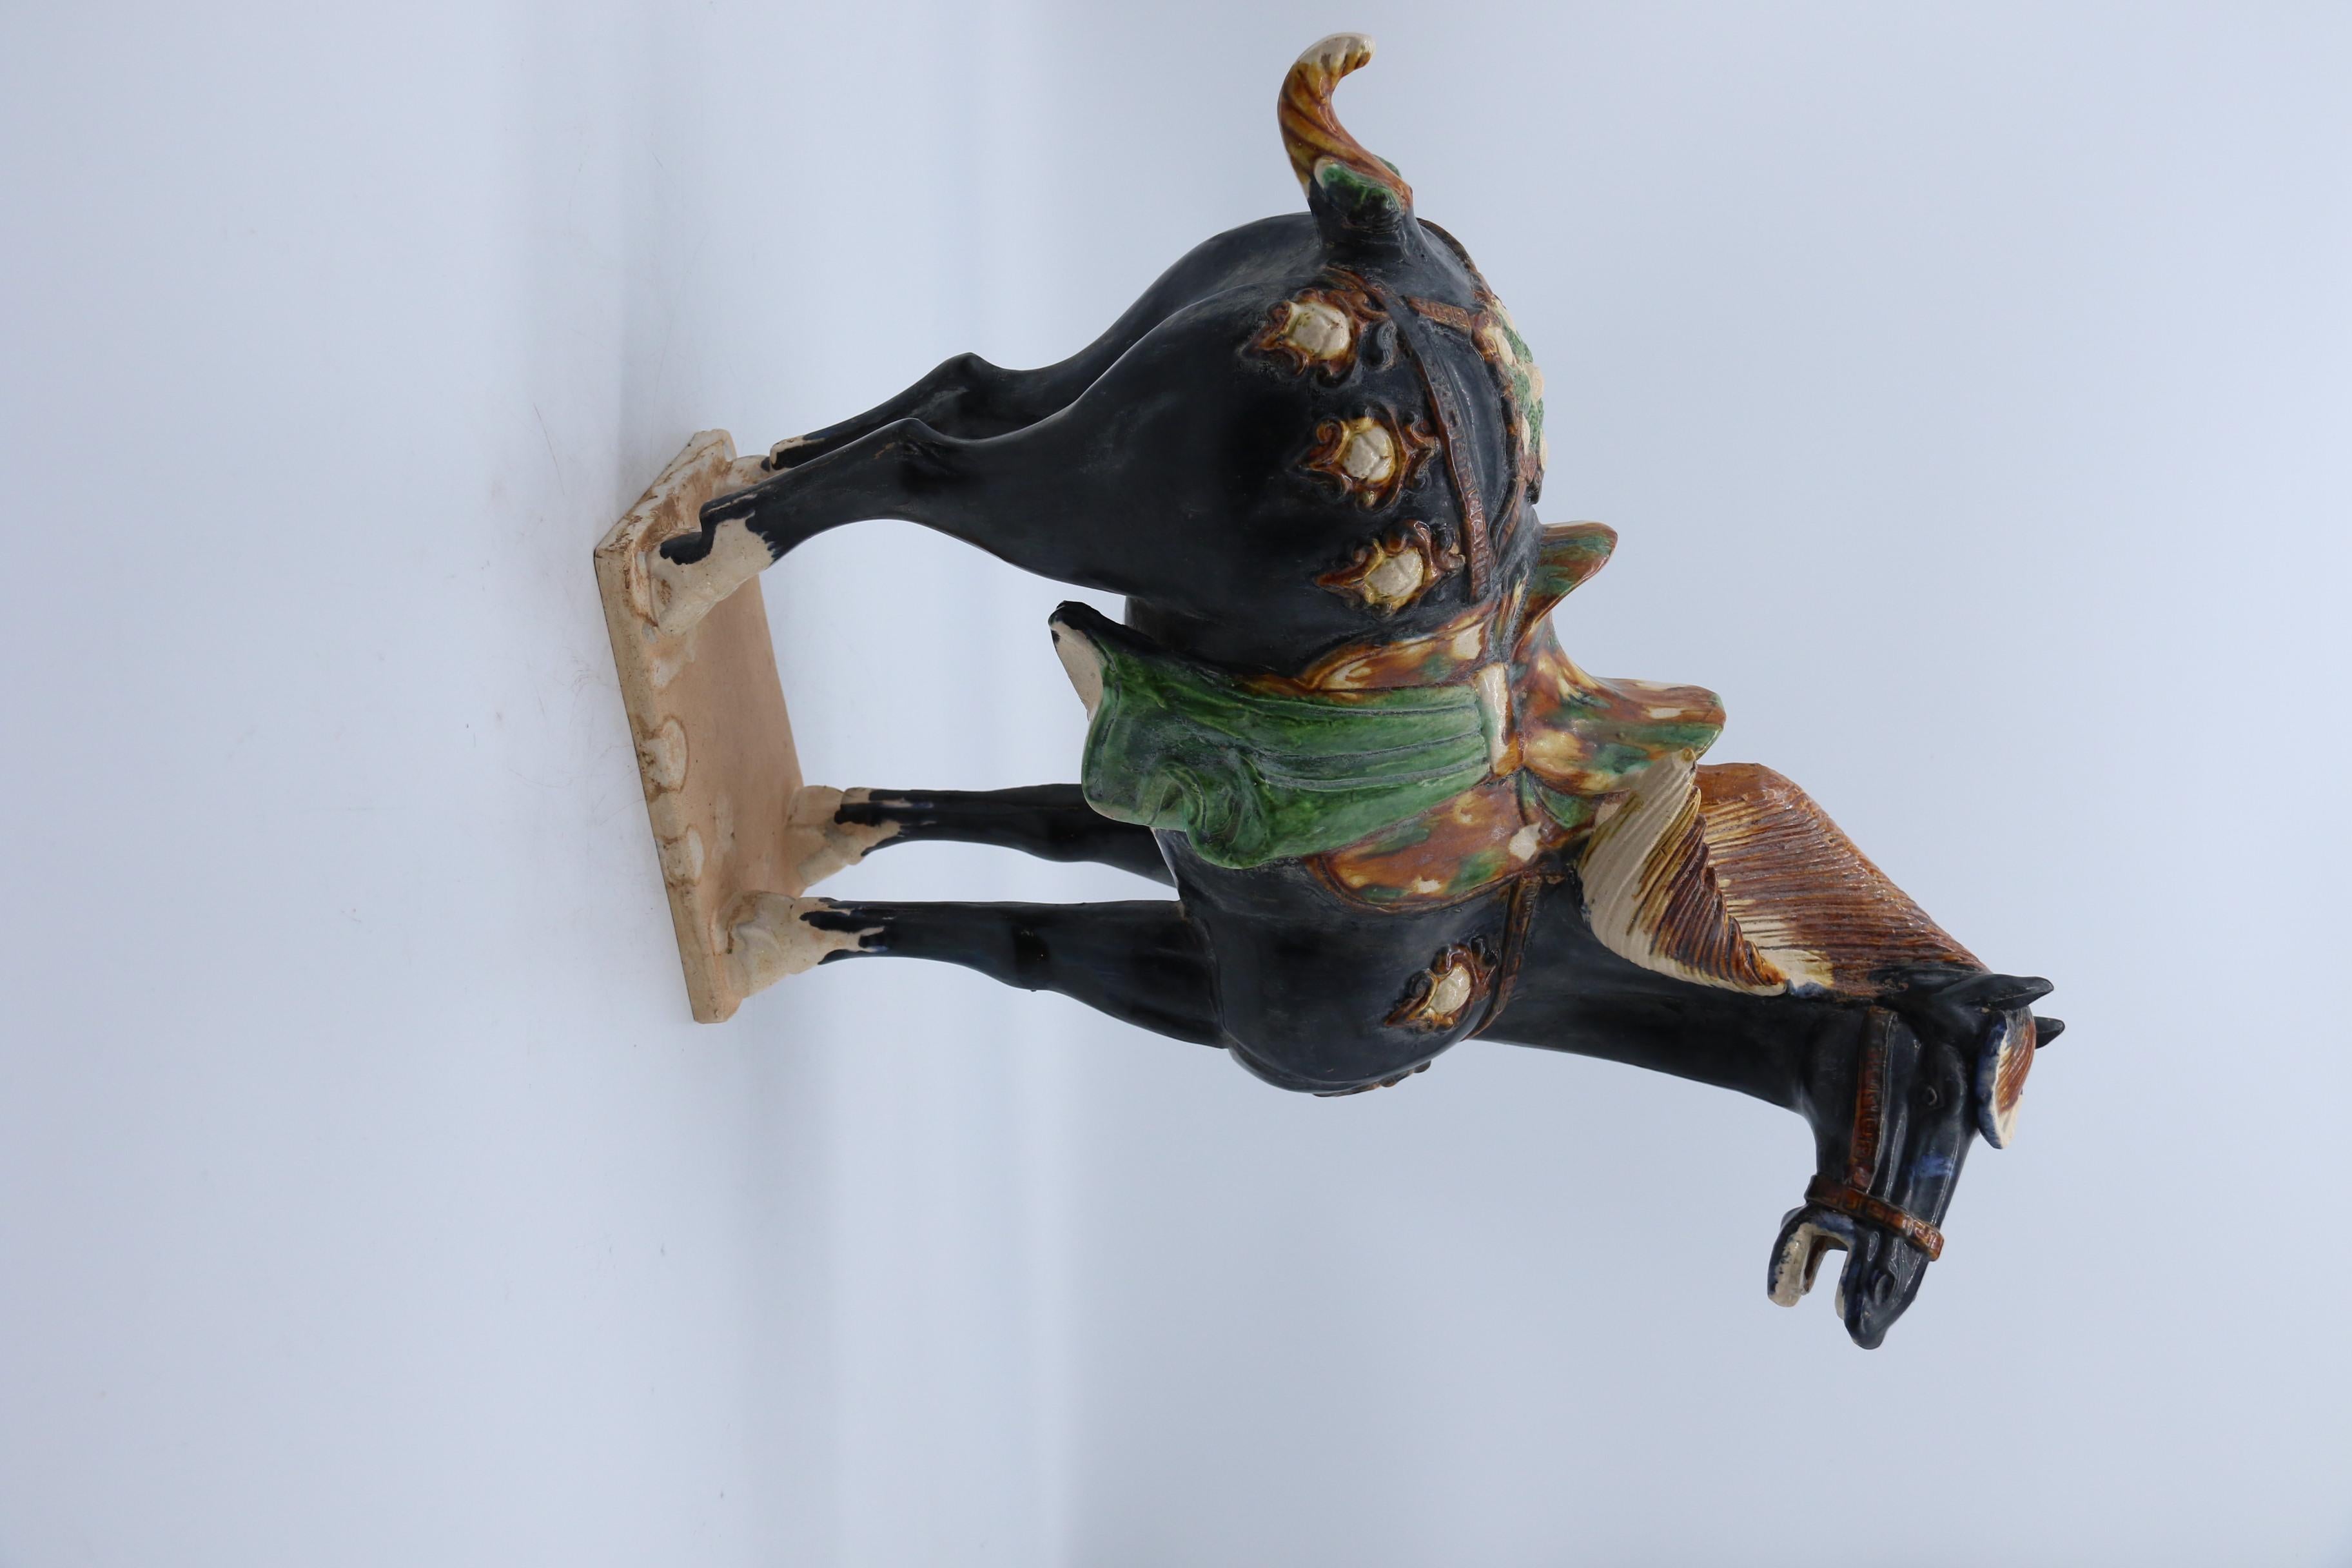 Fiel en todos sus elementos a los ejemplos originales que datan de principios del periodo chino Tang. El caballo negro esmaltado está modelado de forma naturalista. Se alza sobre una base rectangular con crin, cola y pezuñas detalladas. La cabeza